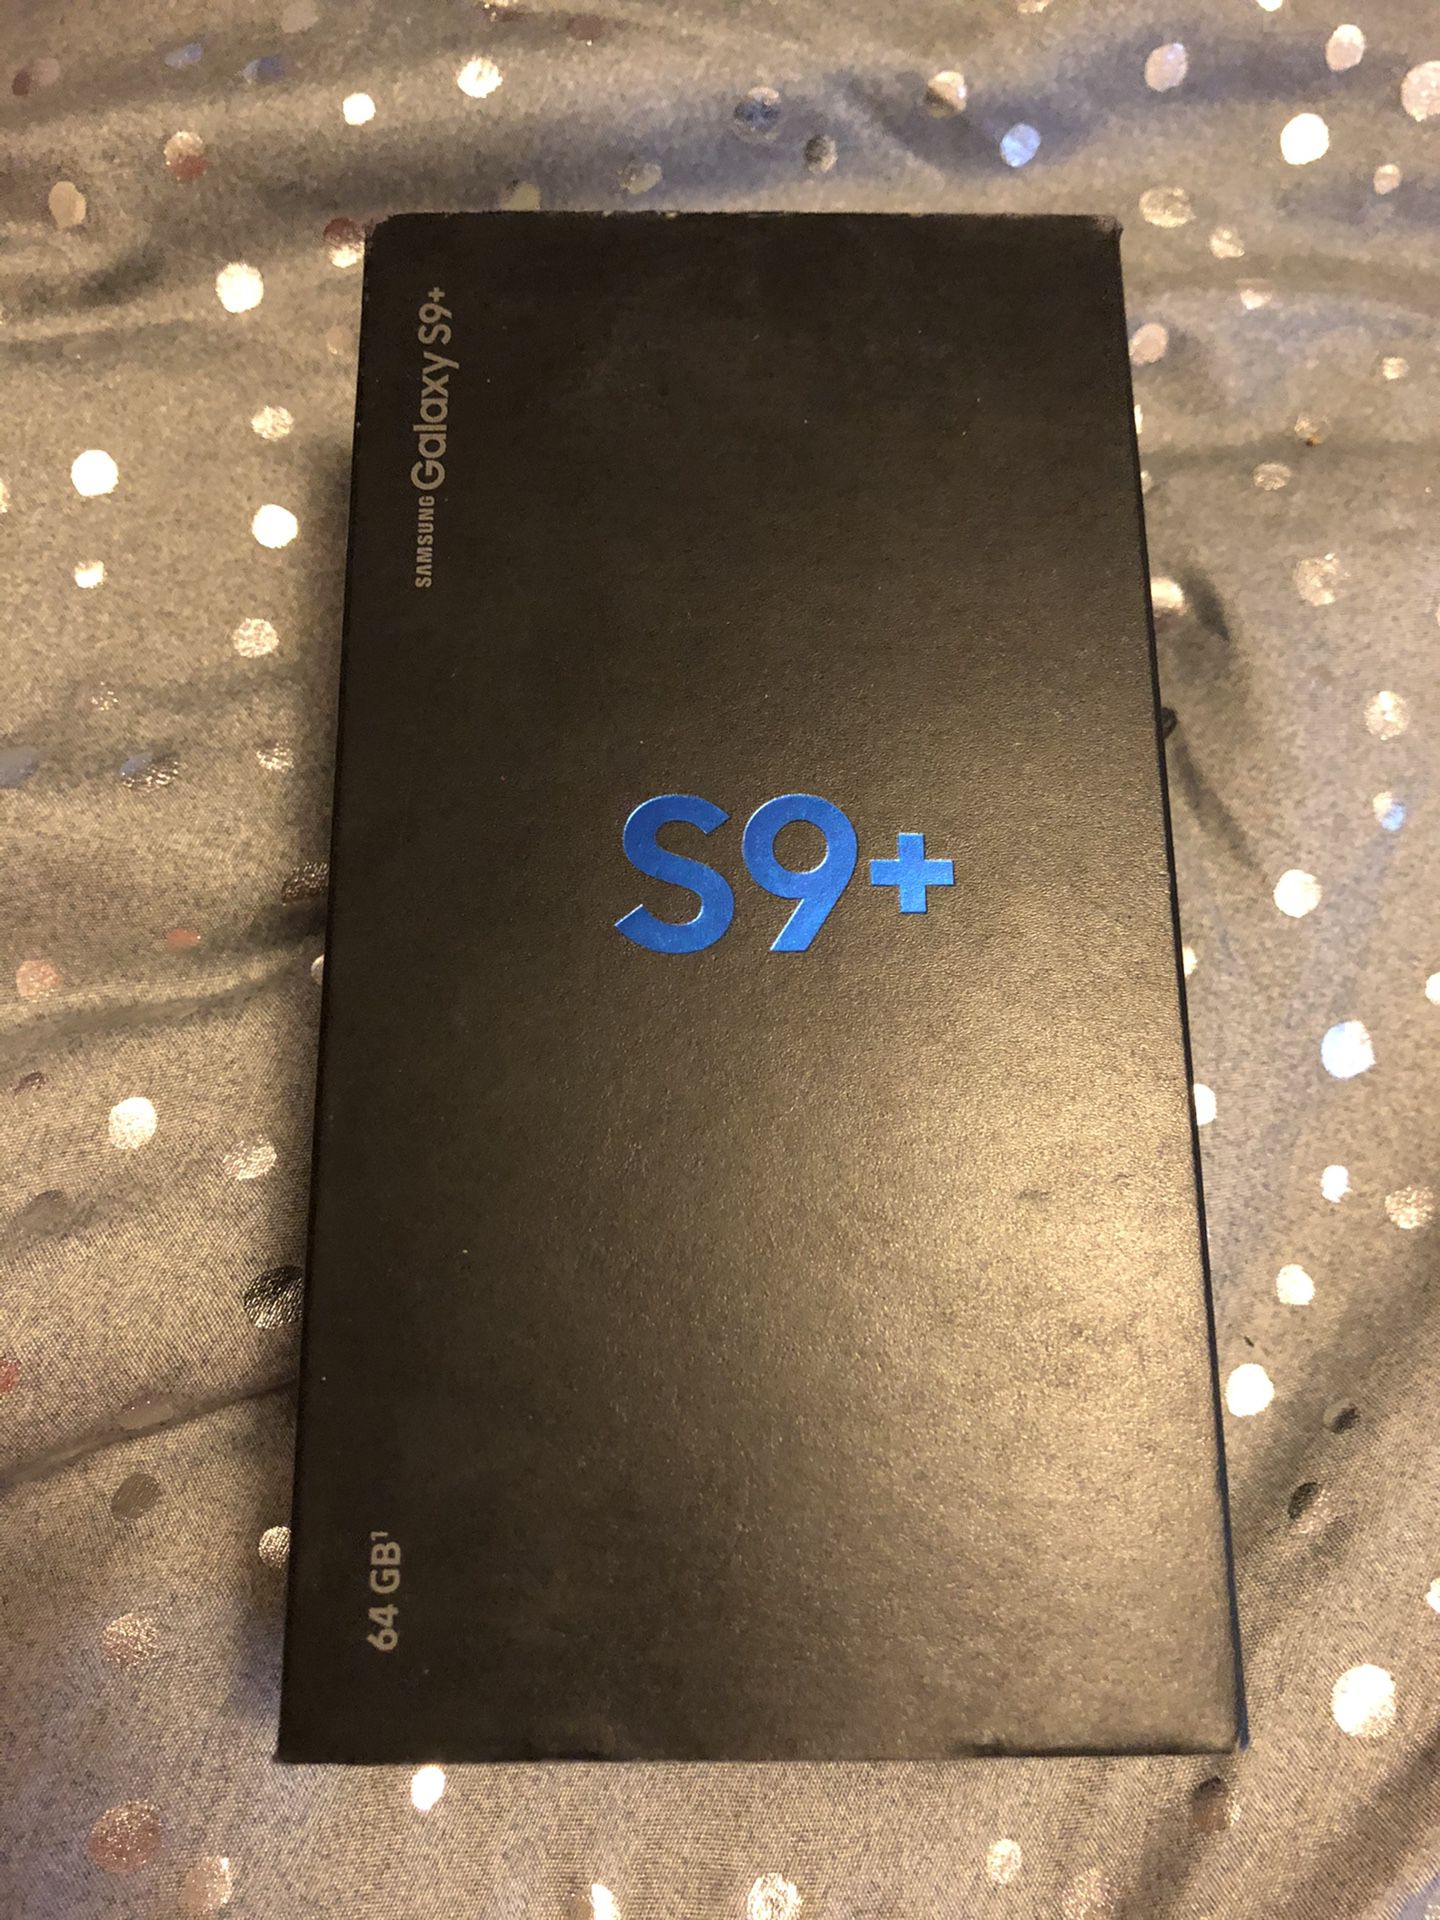 Samsung Galaxy s9+